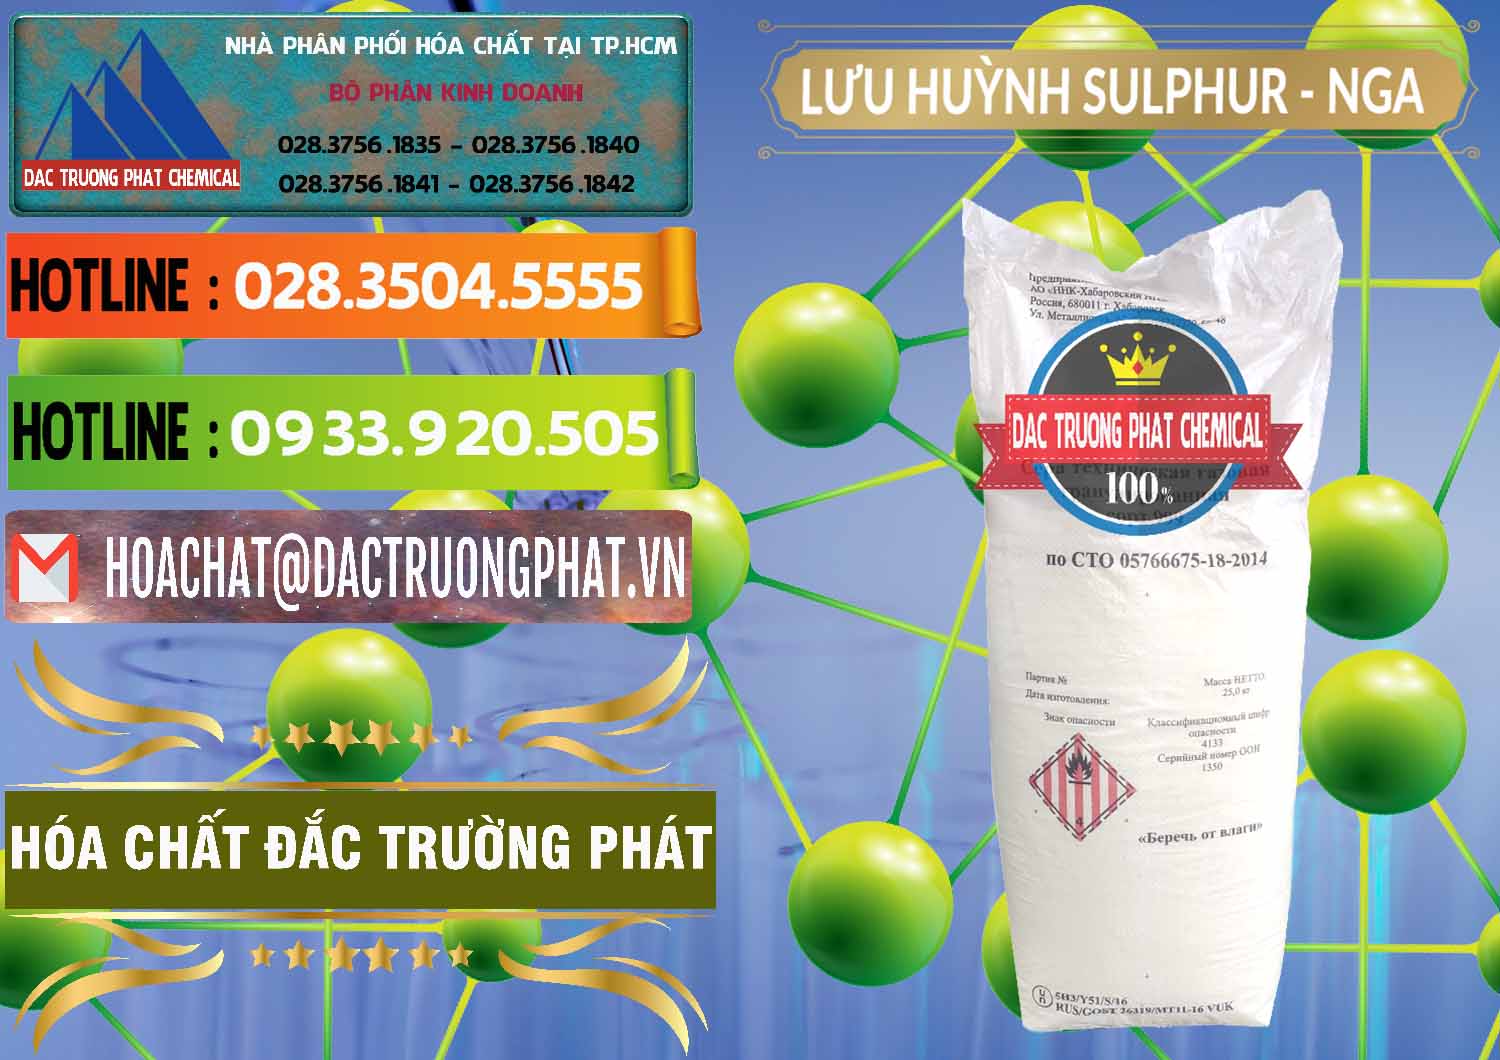 Chuyên cung ứng _ bán Lưu huỳnh Hạt - Sulfur Nga Russia - 0200 - Đơn vị kinh doanh _ cung cấp hóa chất tại TP.HCM - cungcaphoachat.com.vn